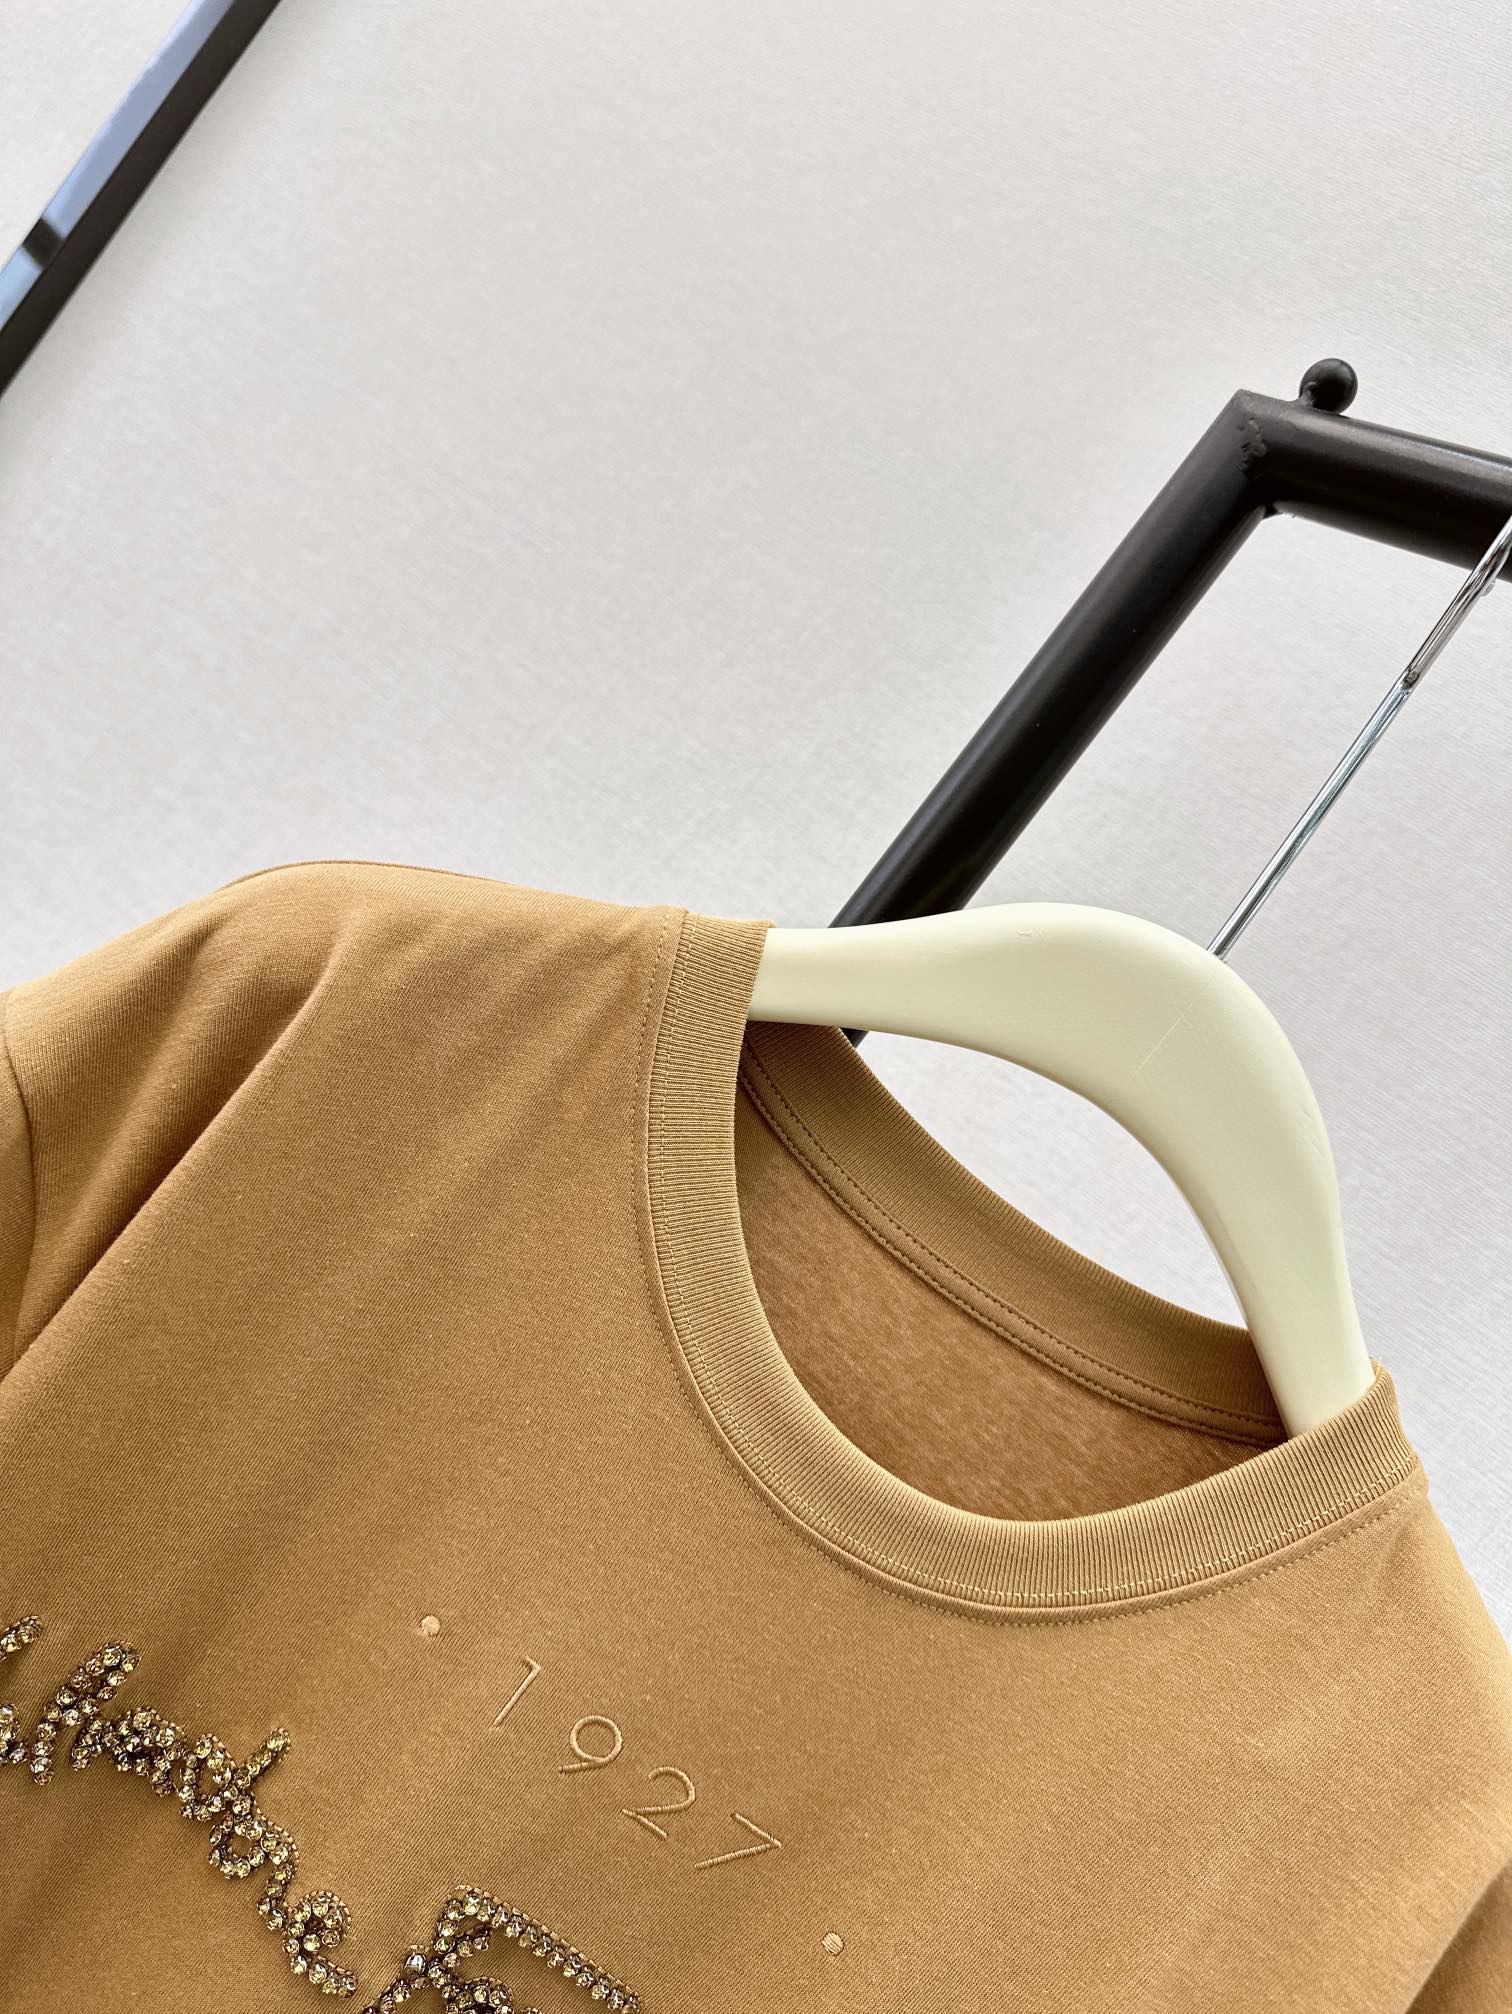 独家首发24Ss春夏最新款水钻装饰宽松休闲T恤超重工的一款刺绣品牌经典标识内填充配色水钻全手工缝制很精致